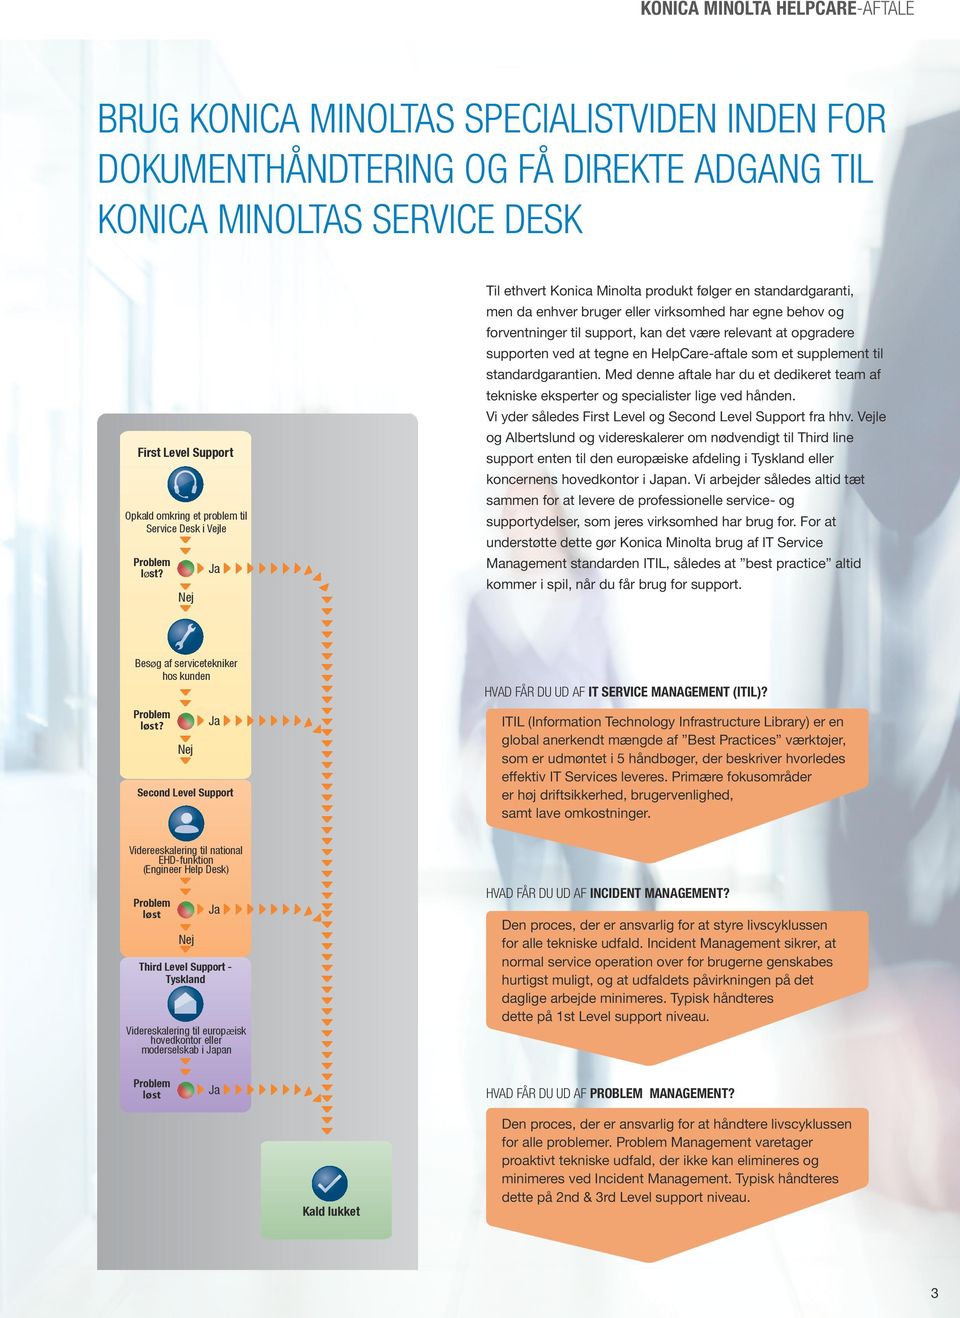 Nej Ja Til ethvert Konica Minolta produkt følger en standardgaranti, men da enhver bruger eller virksomhed har egne behov og forventninger til support, kan det være relevant at opgradere supporten